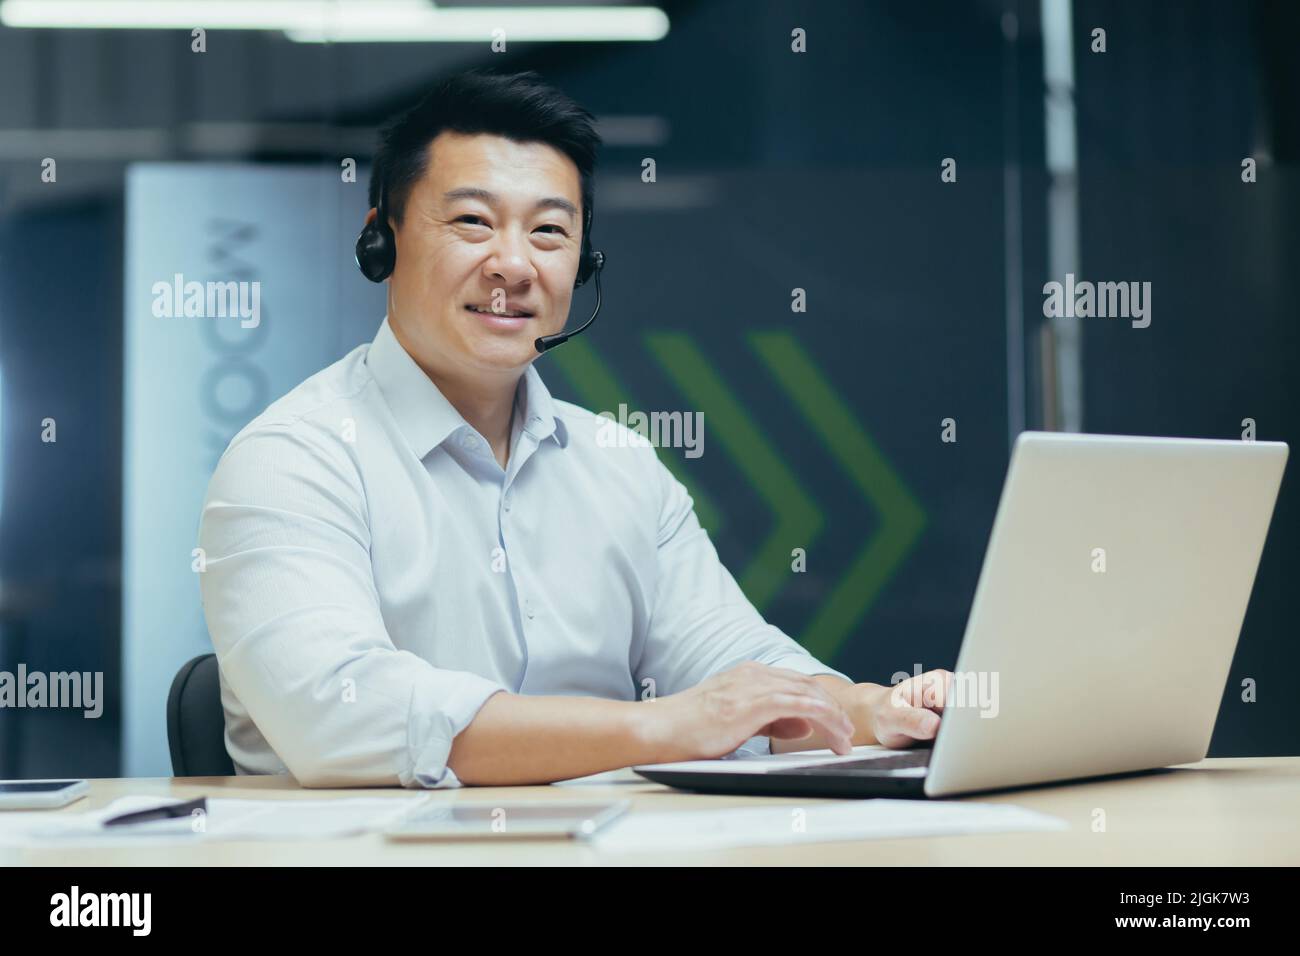 Ritratto di uomo d'affari asiatico di successo con cuffie video chiamata guardando la fotocamera e sorridente, consulente di supporto tecnico che lavora in ufficio con il laptop Foto Stock